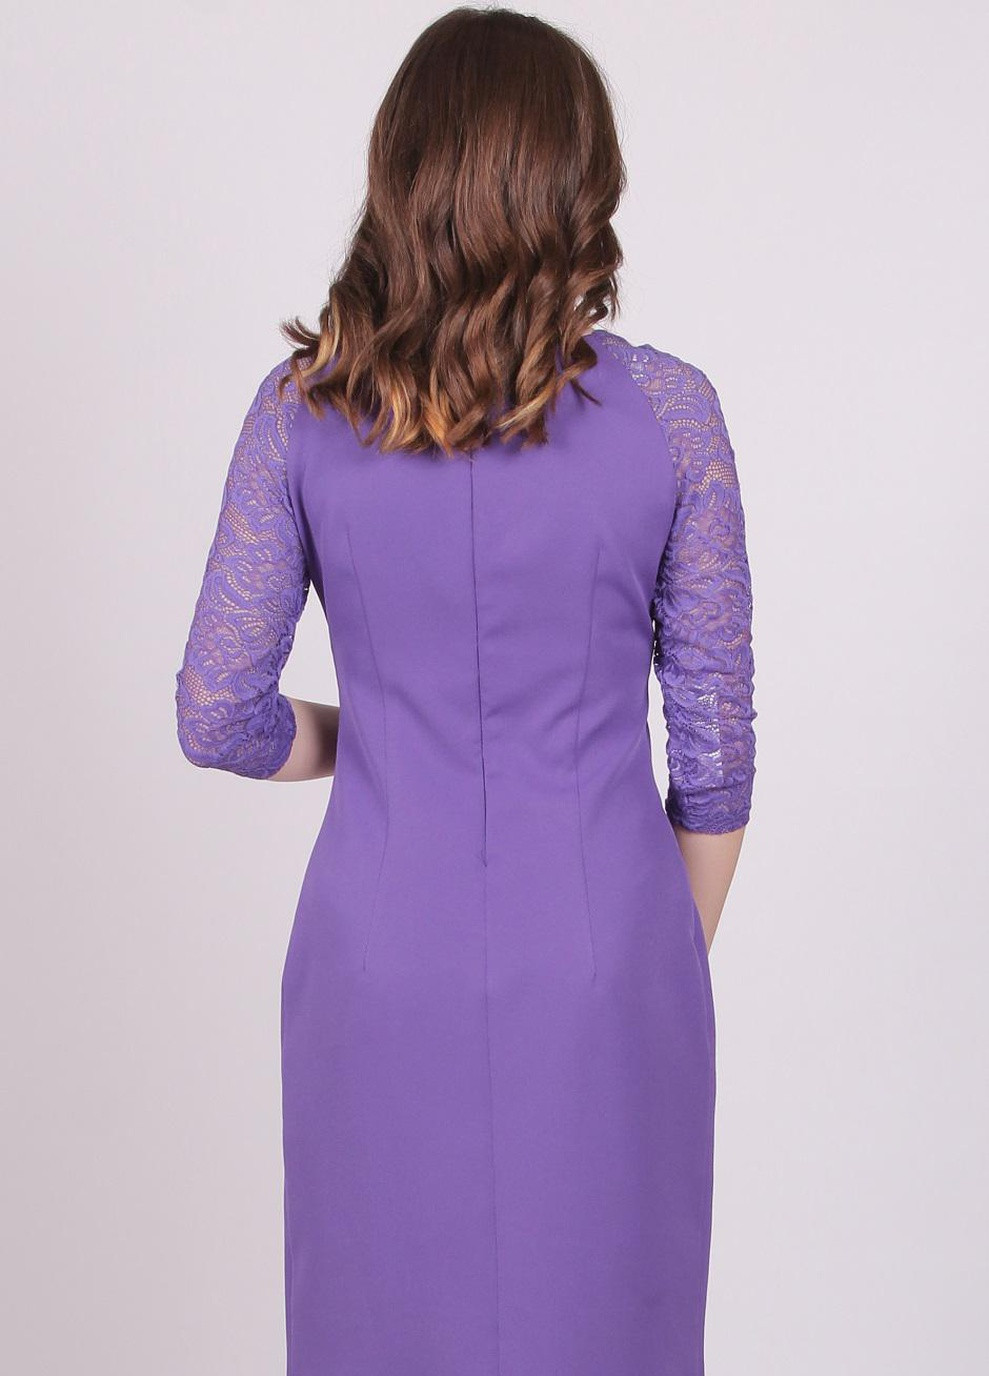 Фиолетовое платье женское 558 однотонный креп фиолетовый Актуаль